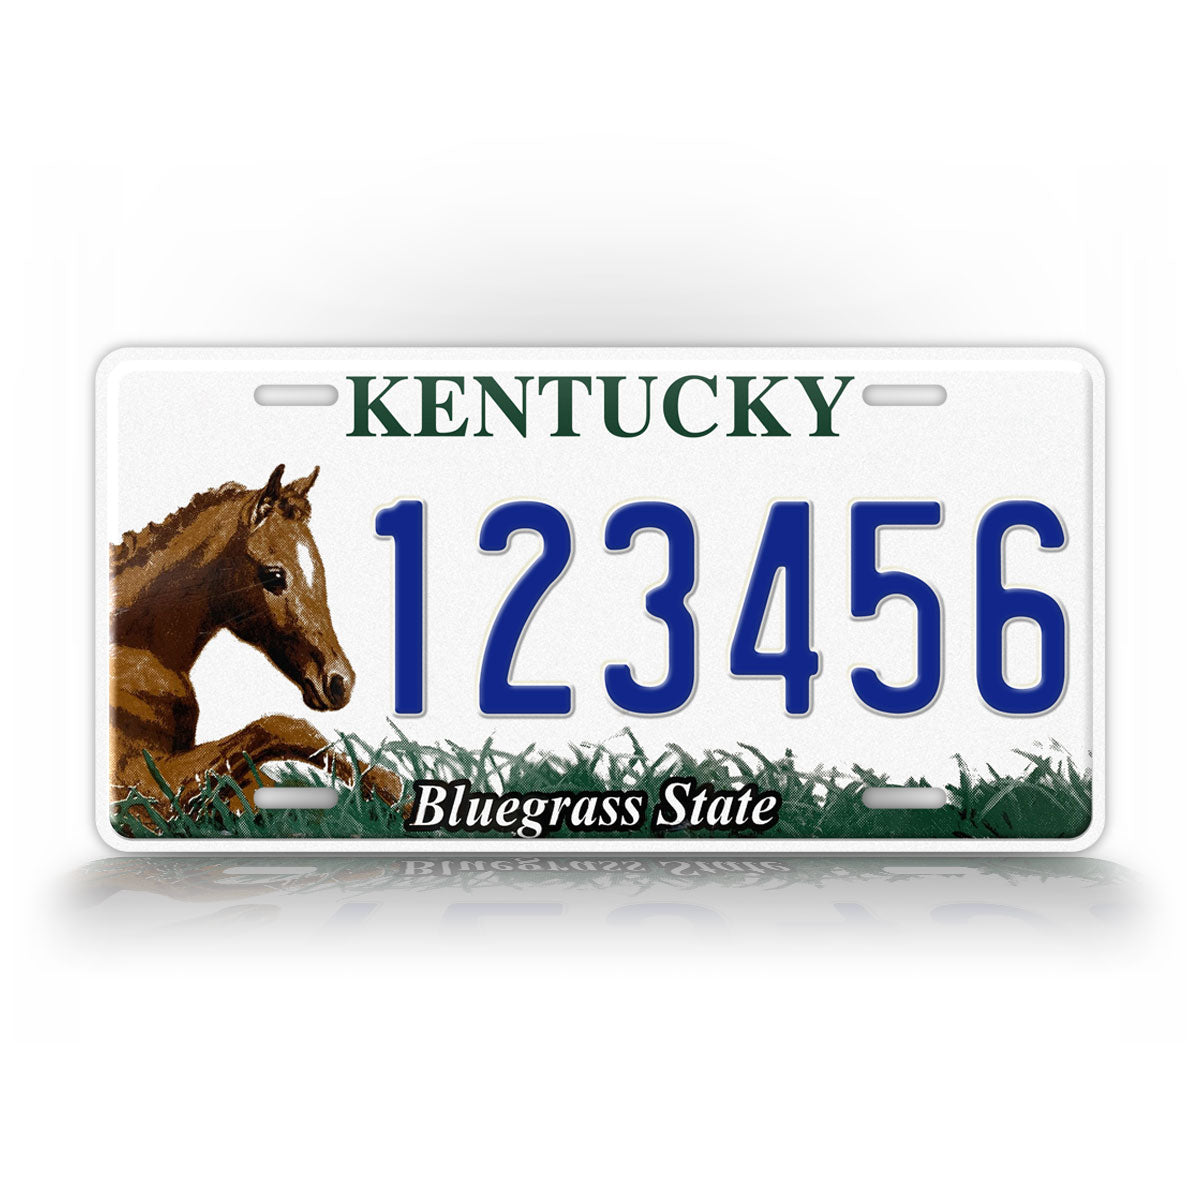 Kentucky Horse "Bluegrass State" License Plate